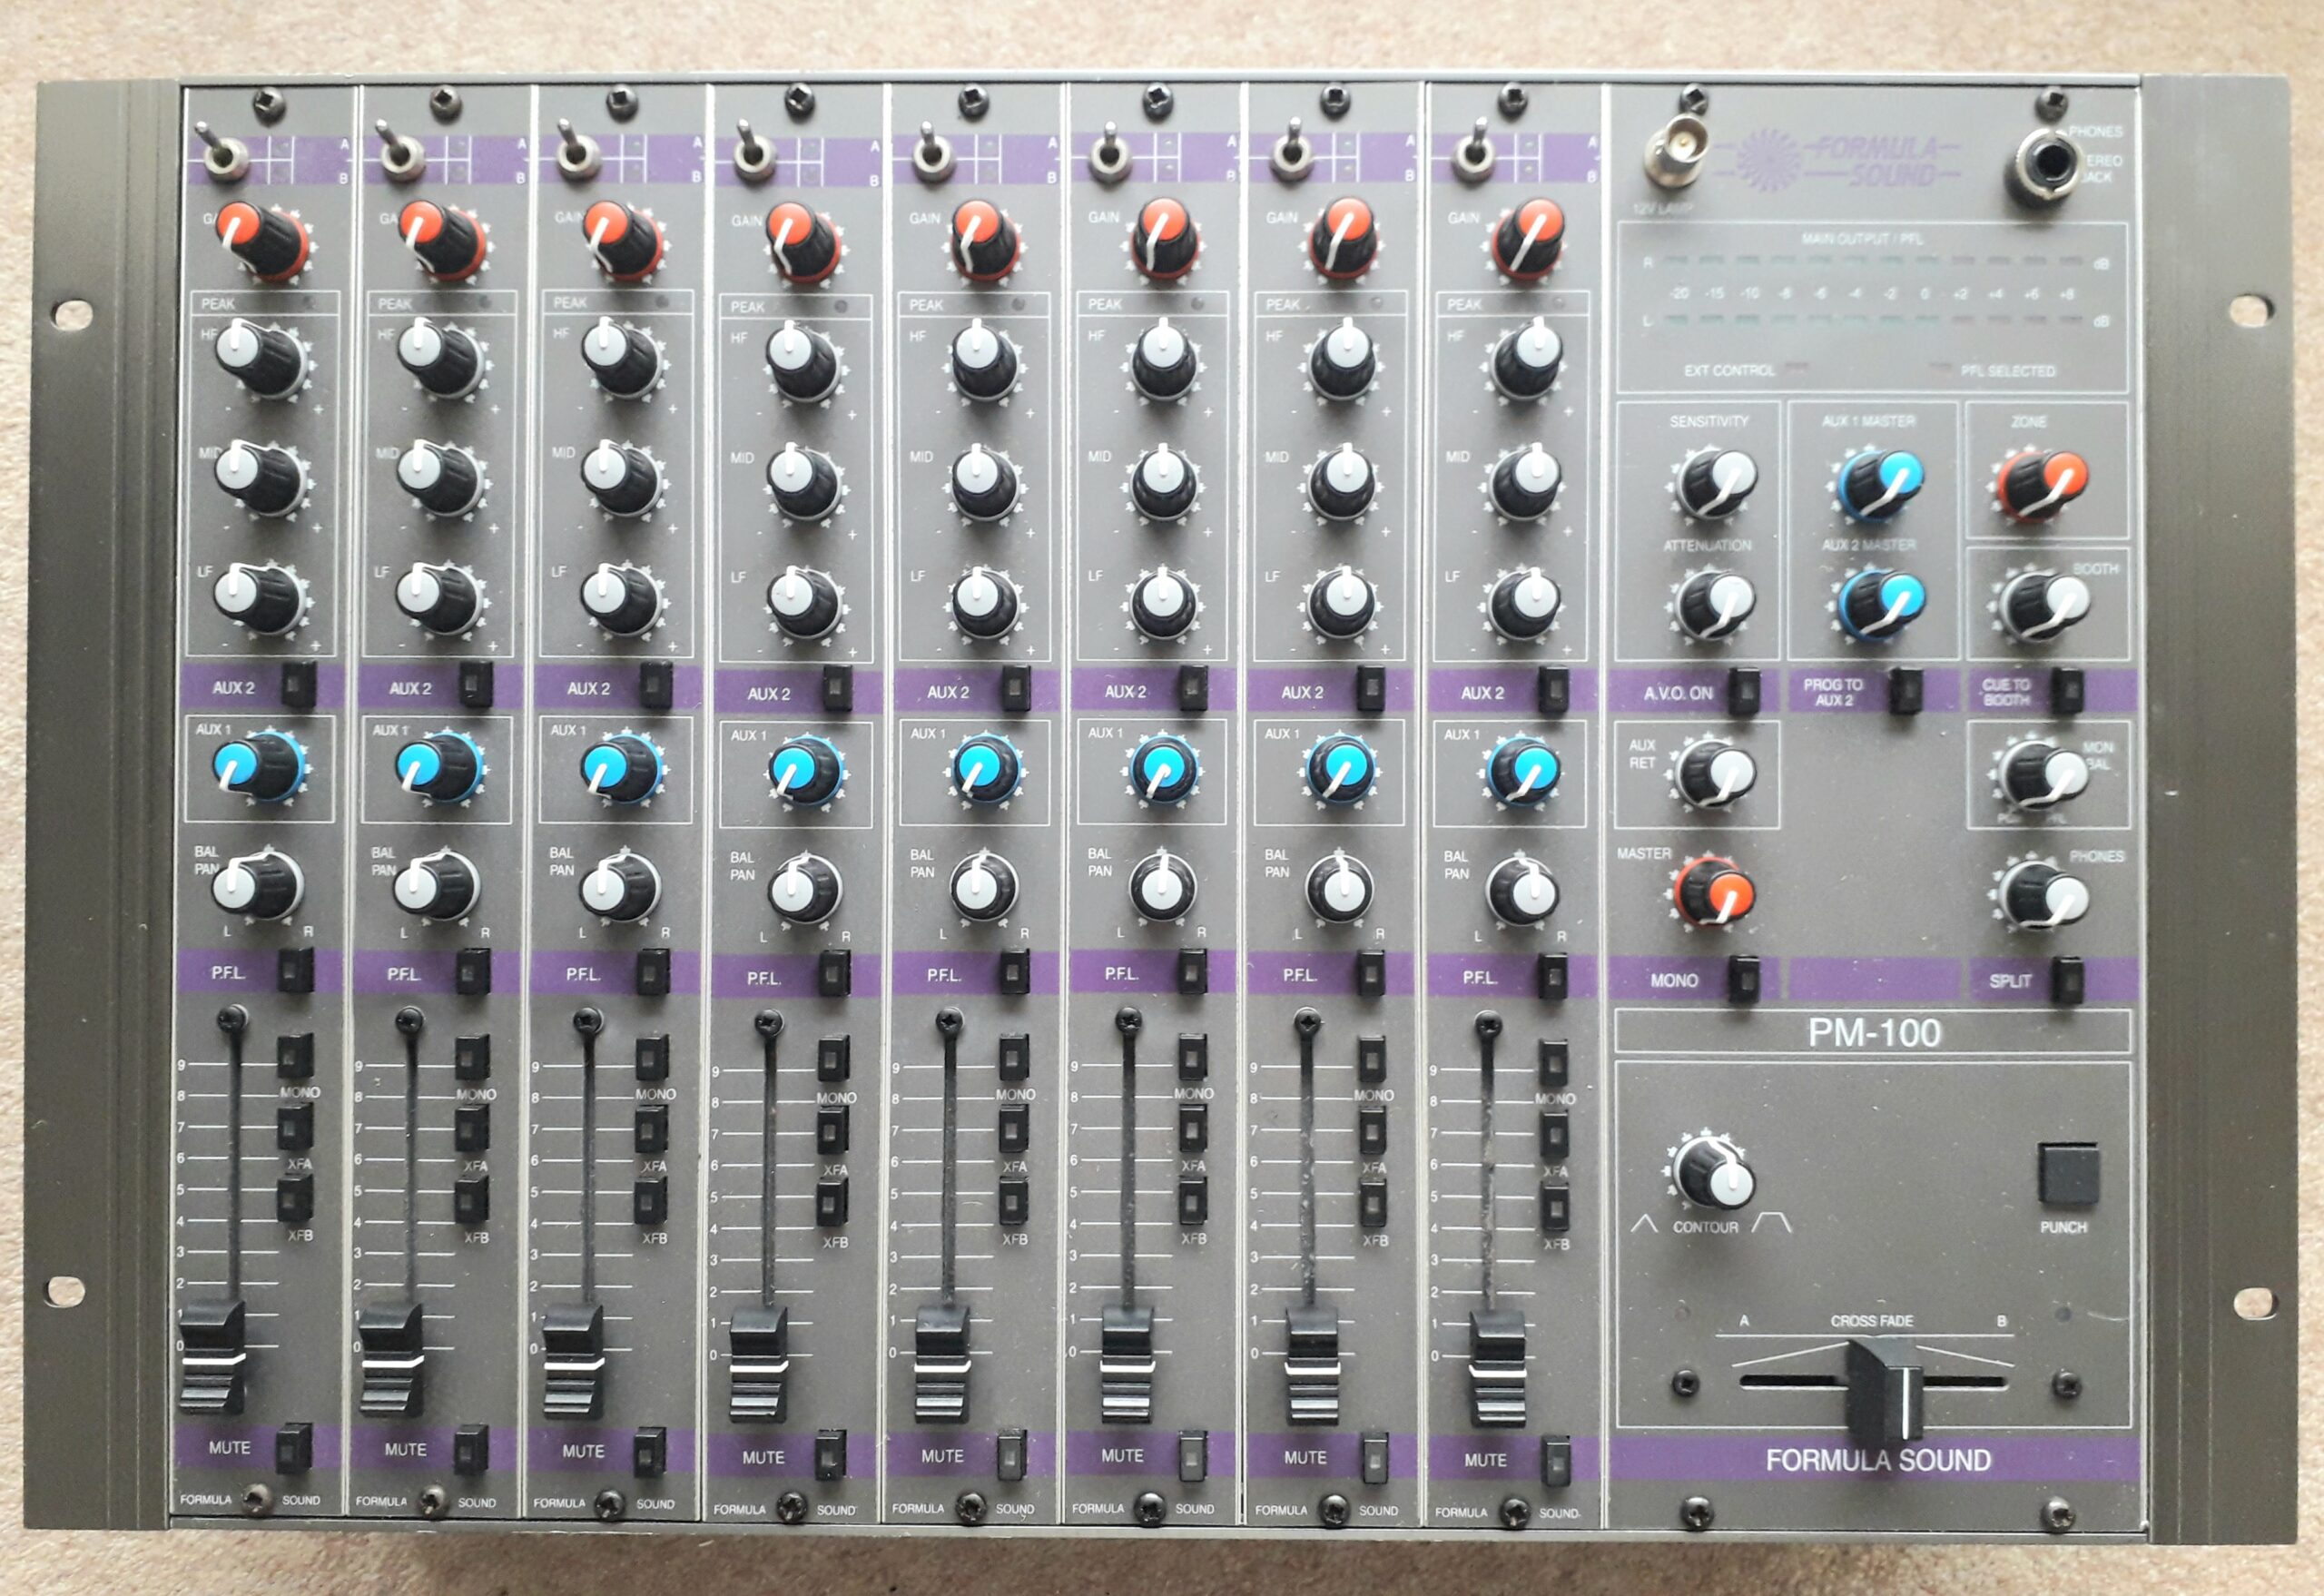 Pm100 mixer